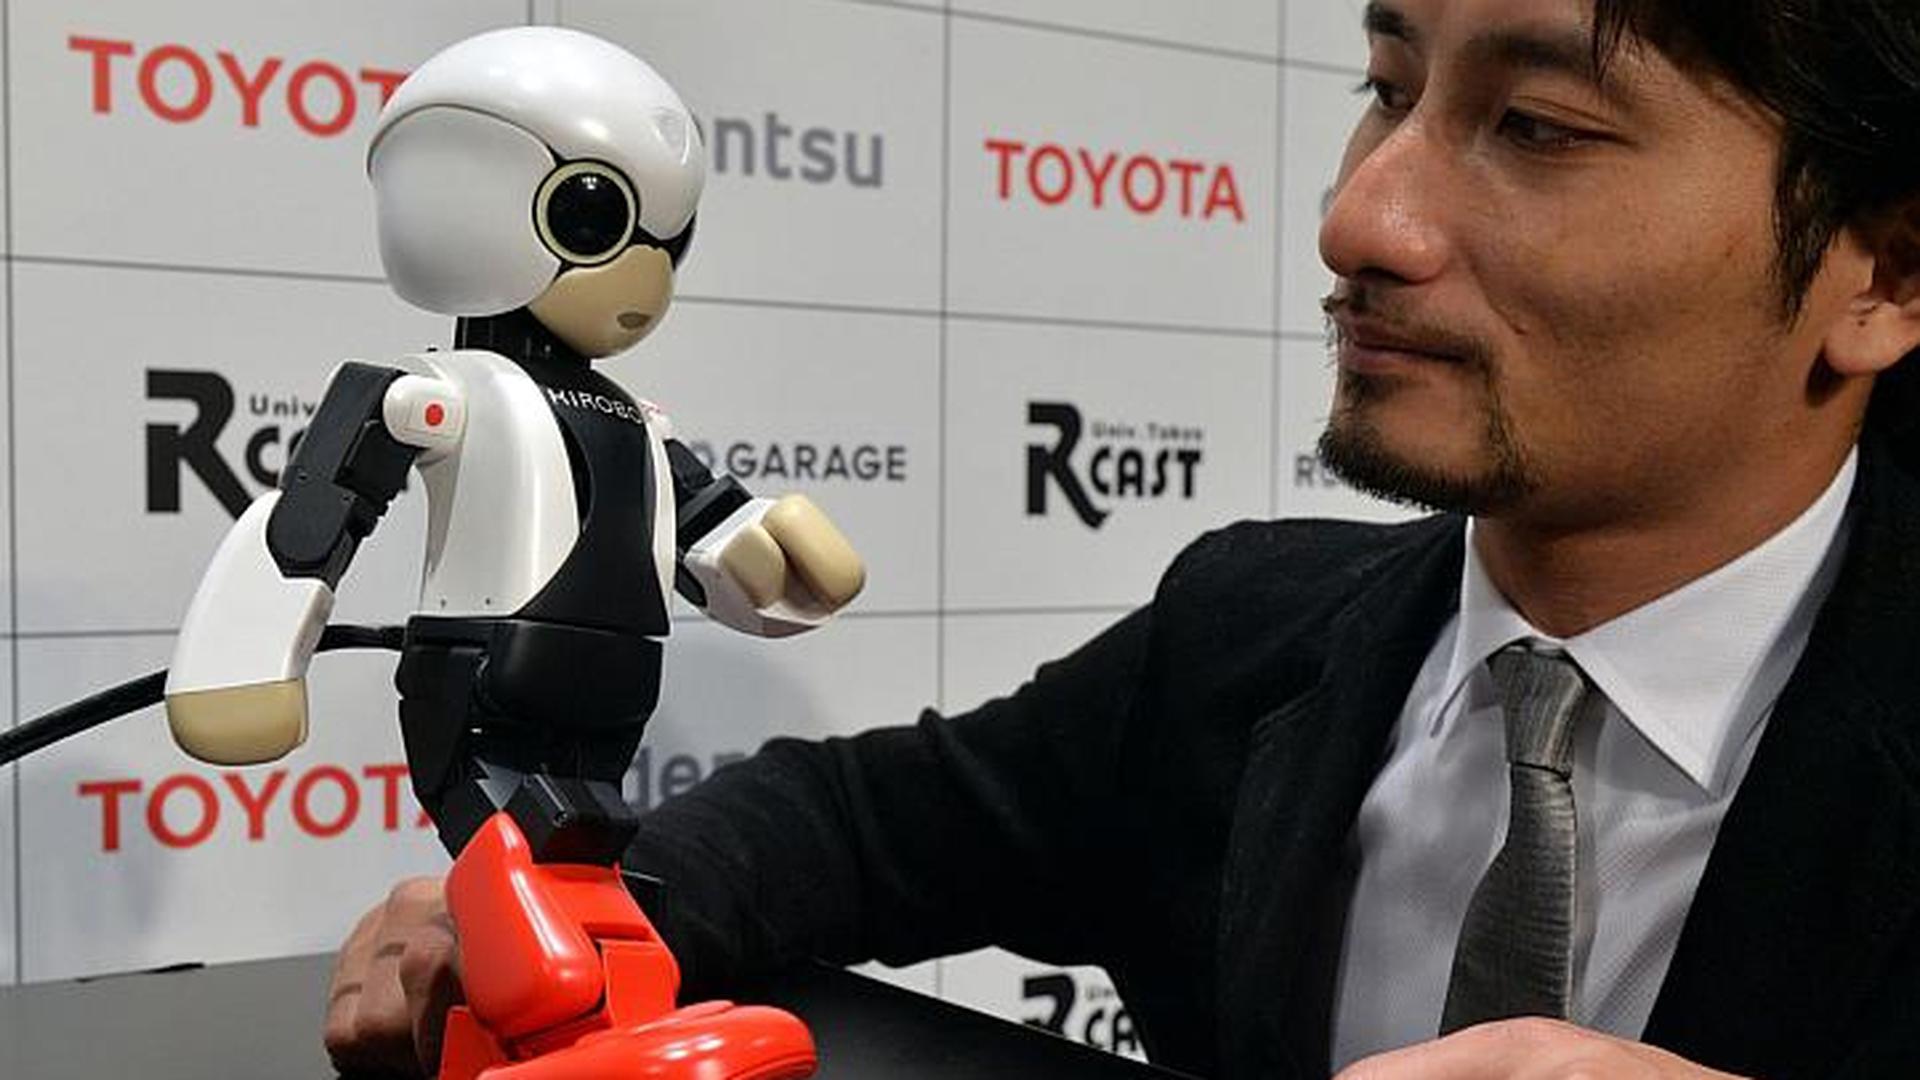 Esta manhã, durante a conferência de imprensa, Kirobo apareceu ao lado do seu conceptor, o engenheiro em robótica Tomotaka Takahashi, e fez questão de falar com os jornalistas